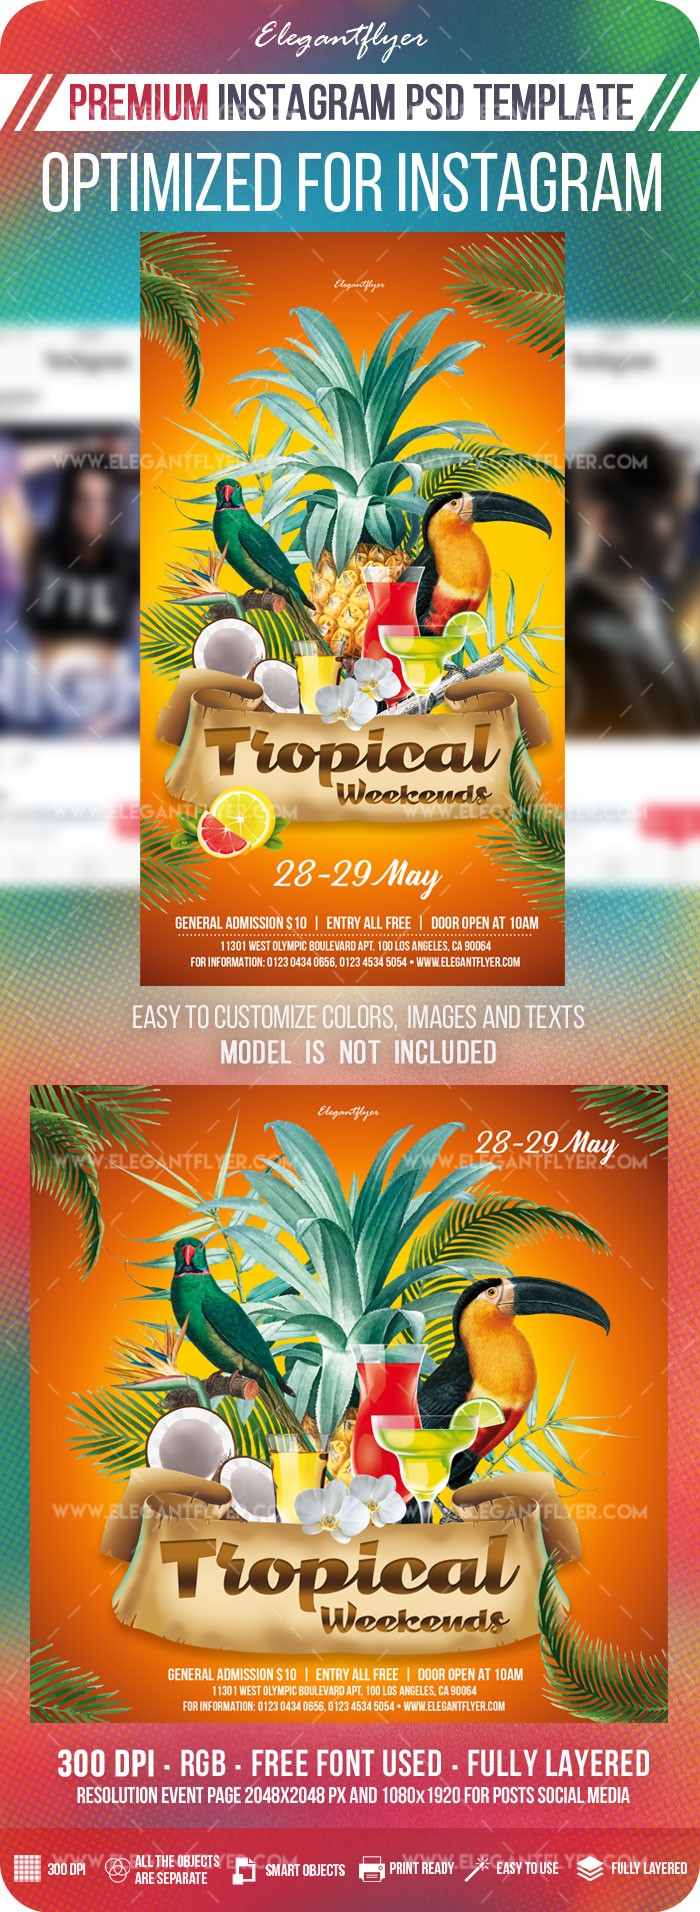 Fins de semana tropicais no Instagram. by ElegantFlyer